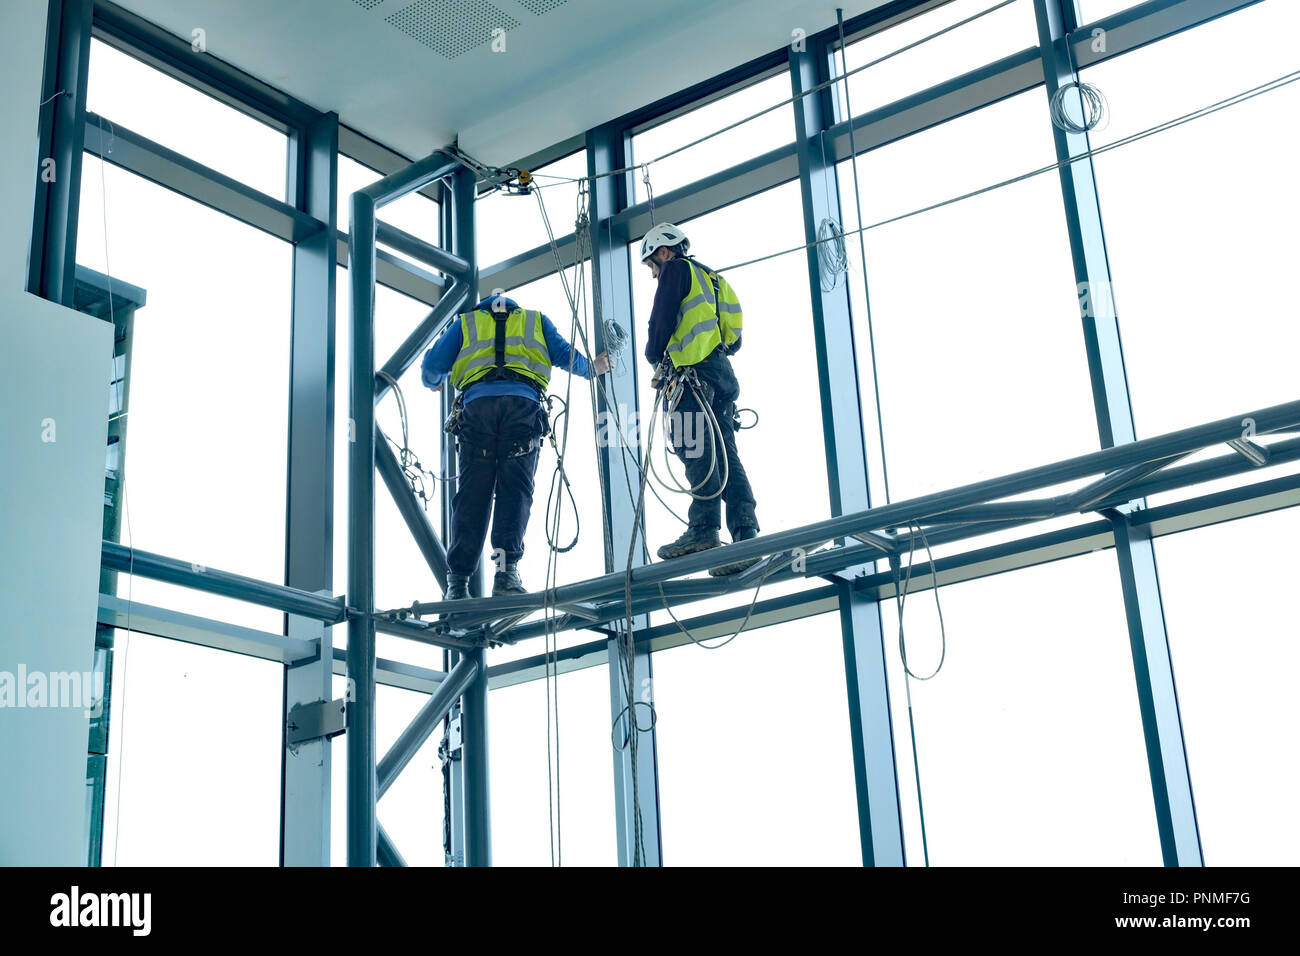 März 2016 - Zwei seilunterstützte Kerle auf hohem Niveau in einem Büro Eingangsbereich arbeiten Stockfoto